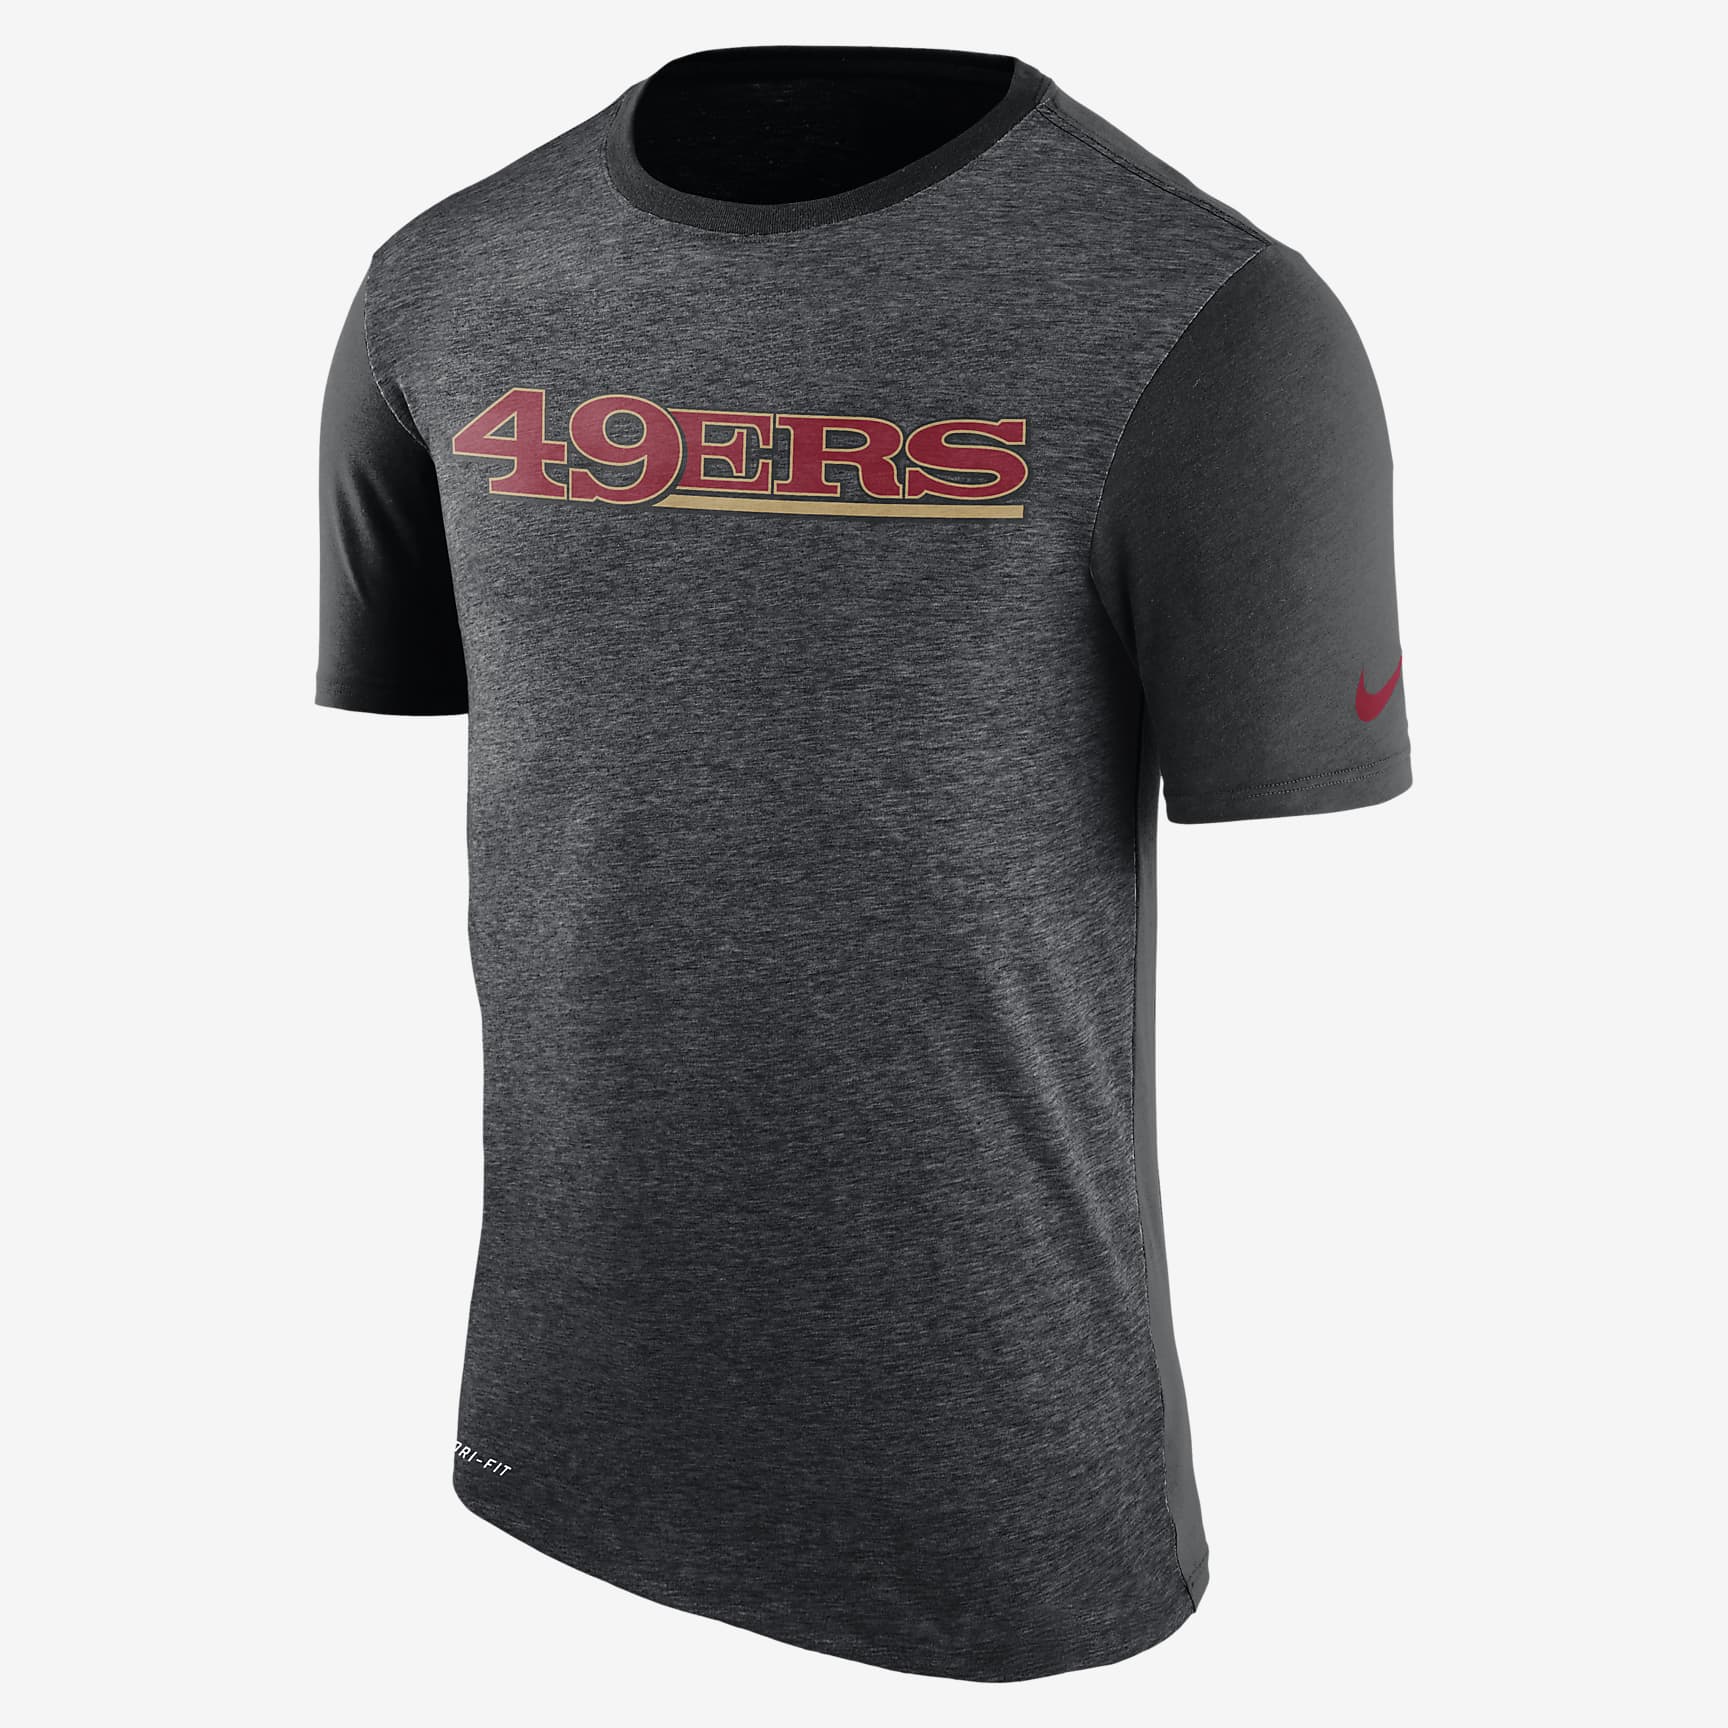 Nike Dry Color Dip (NFL 49ers) Men's T-Shirt. Nike RO